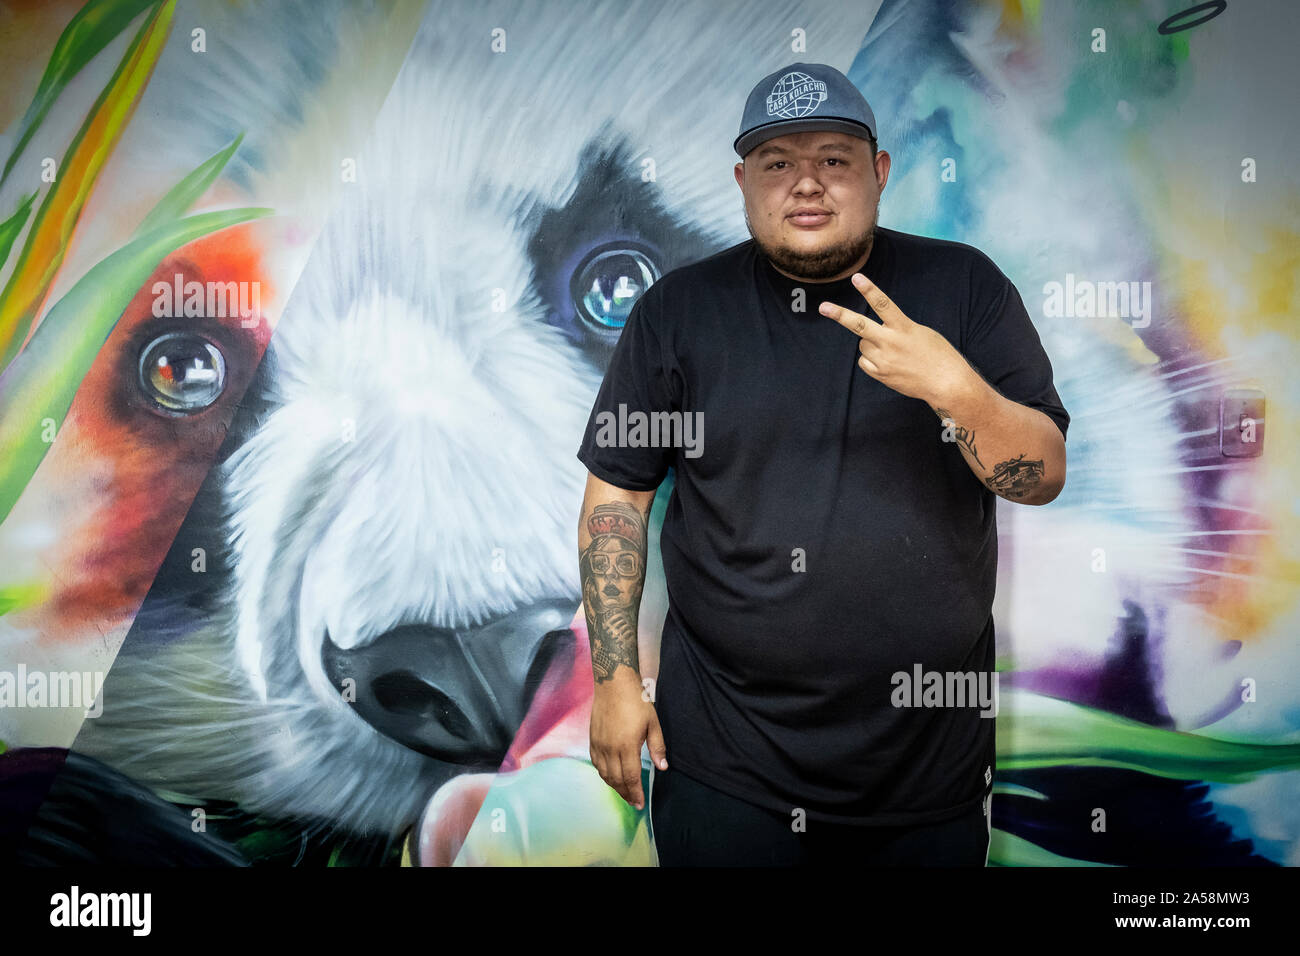 Jeihhco Castaño, leader social, Hip Hopper, membre du groupe de rap C15, co-fondateur de 'La Casa de Hip Hop Kolacho', à partir de la Comuna 13, Medellín, Colombie Banque D'Images